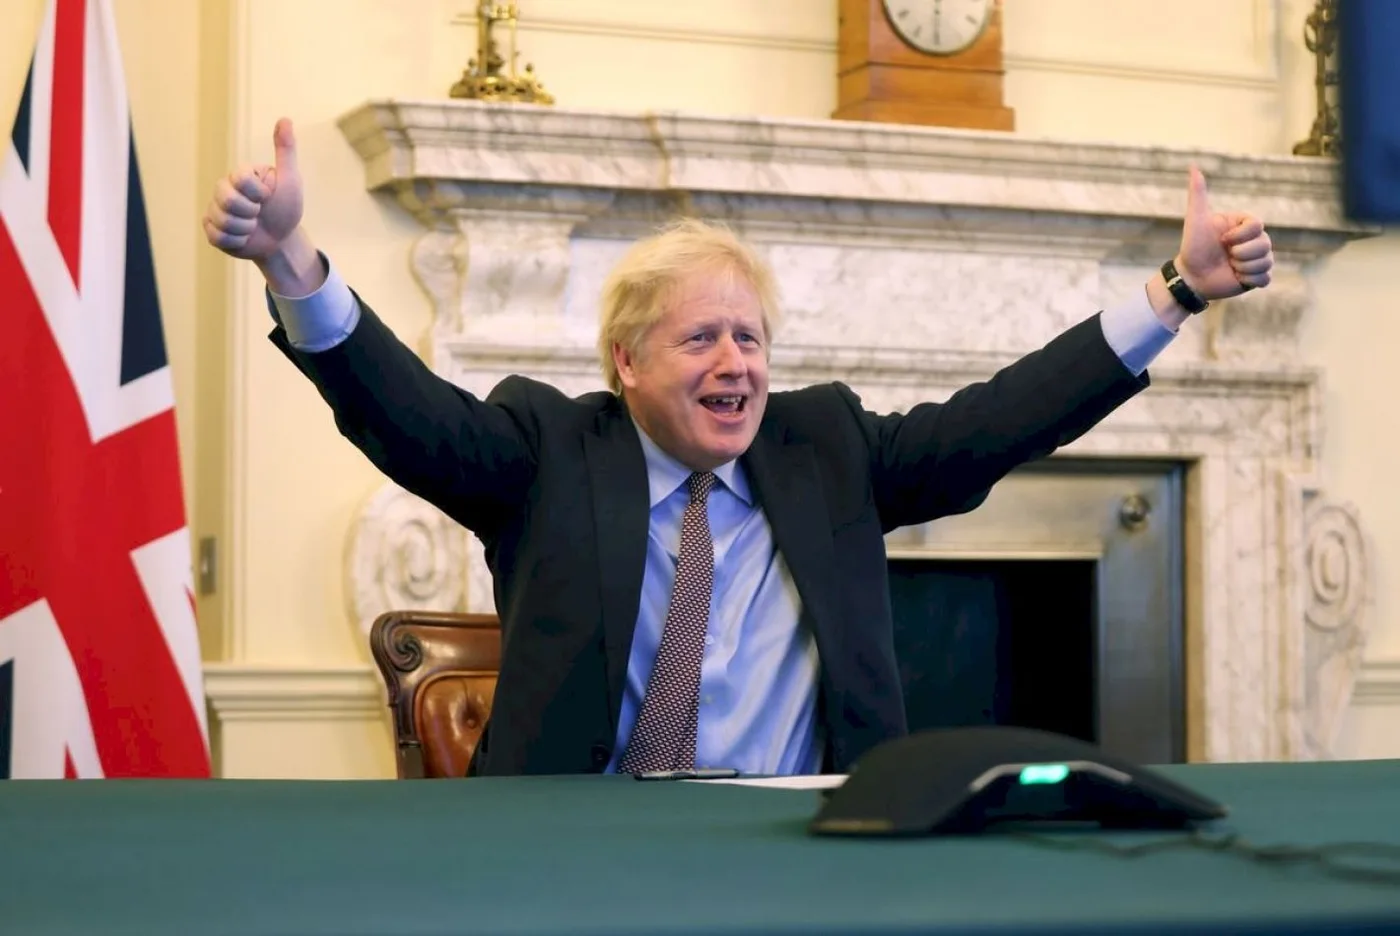 primer ministro británico, Boris Johnson, envió su tradicional mensaje de fin de año a los habitantes de las Islas Malvinas